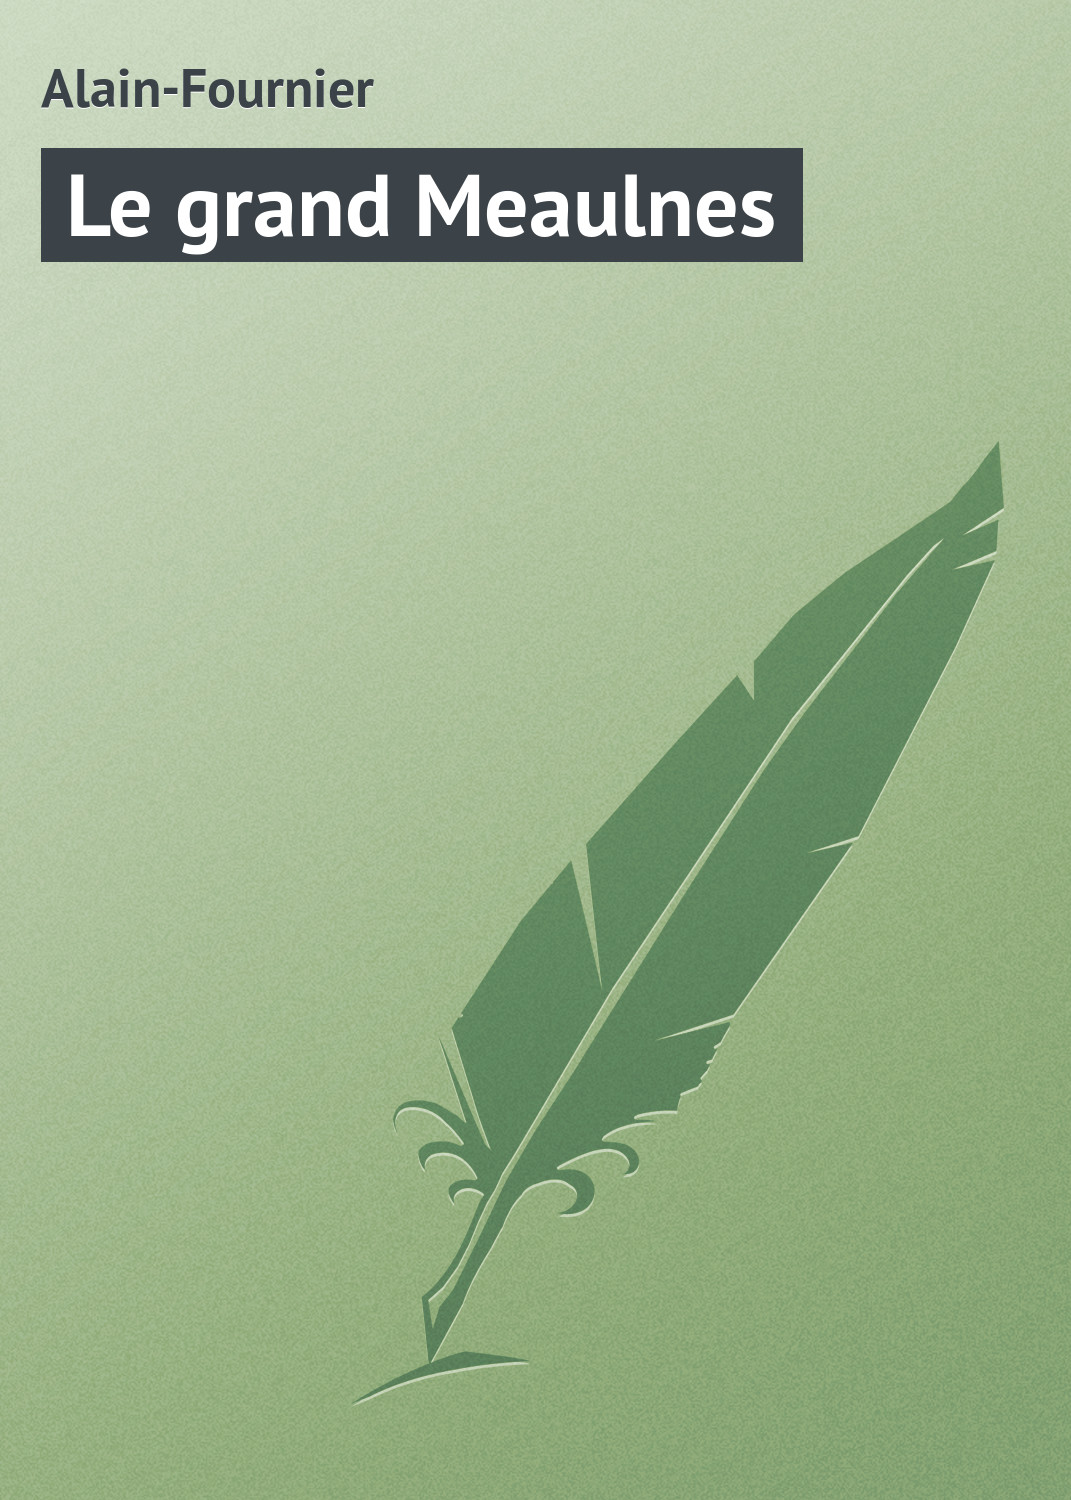 Книга Le grand Meaulnes из серии , созданная Alain-Fournier , может относится к жанру Зарубежная старинная литература, Зарубежная классика. Стоимость электронной книги Le grand Meaulnes с идентификатором 21104638 составляет 5.99 руб.